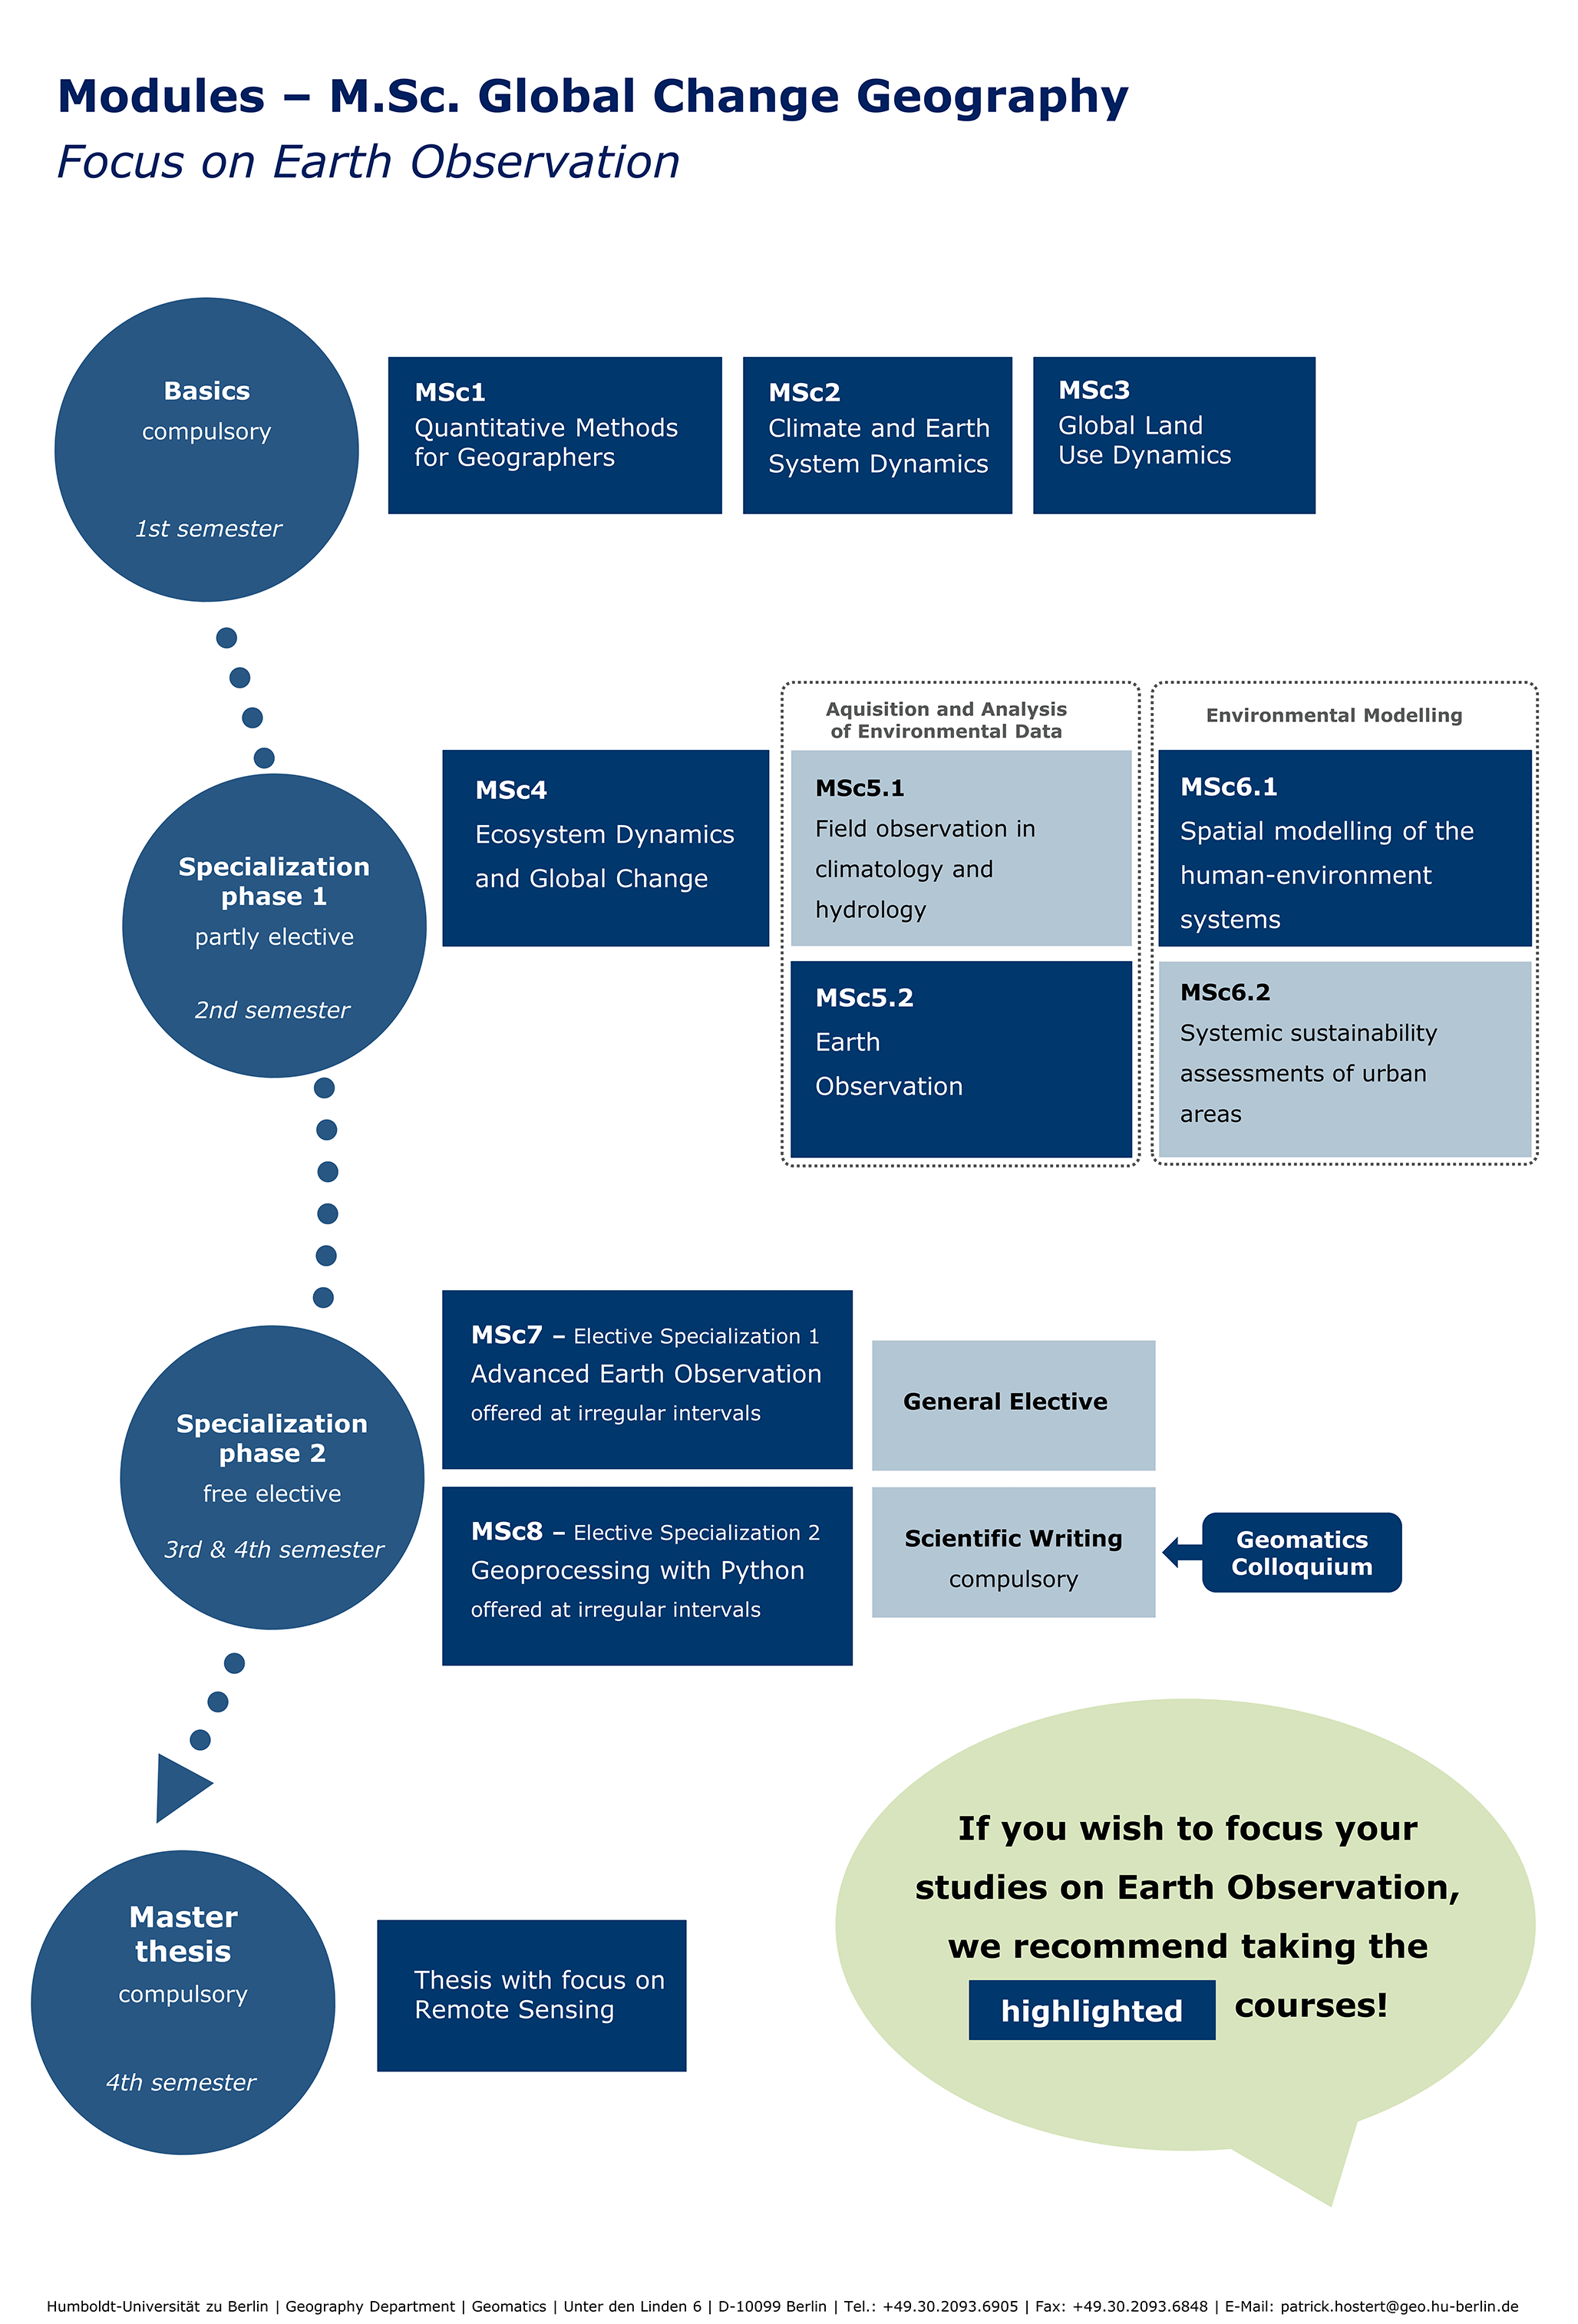 M.Sc. Plan of modules pic